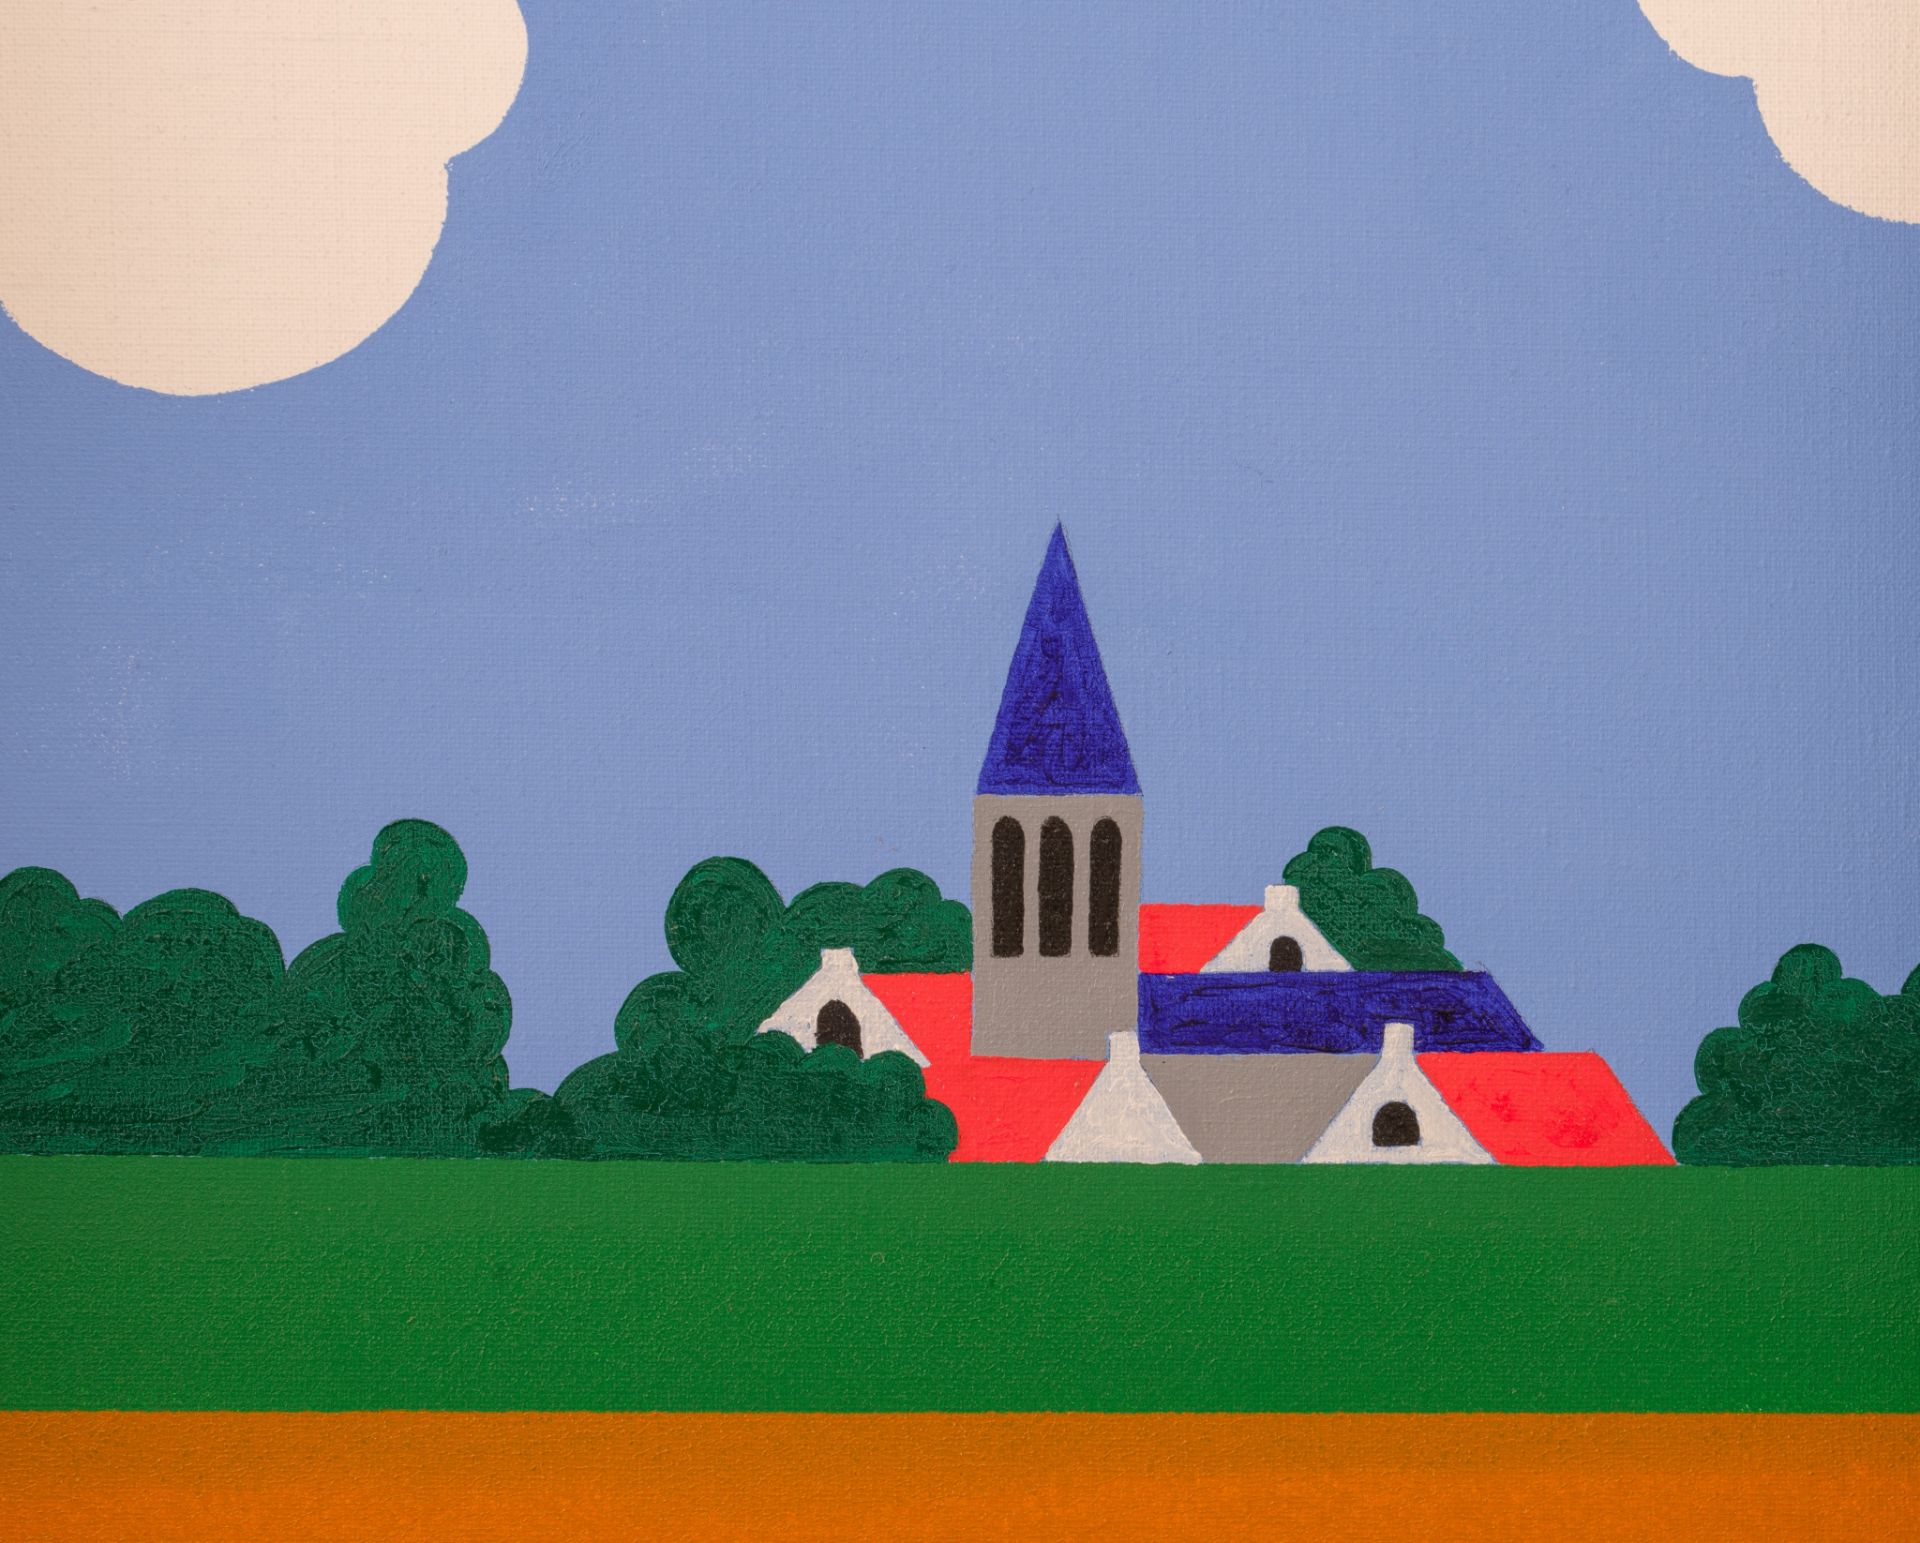 Joseph Willaert (1936-2014), 'Landschap met Gordijntjes', oil on canvas, 72 x 94 cm - Image 5 of 5